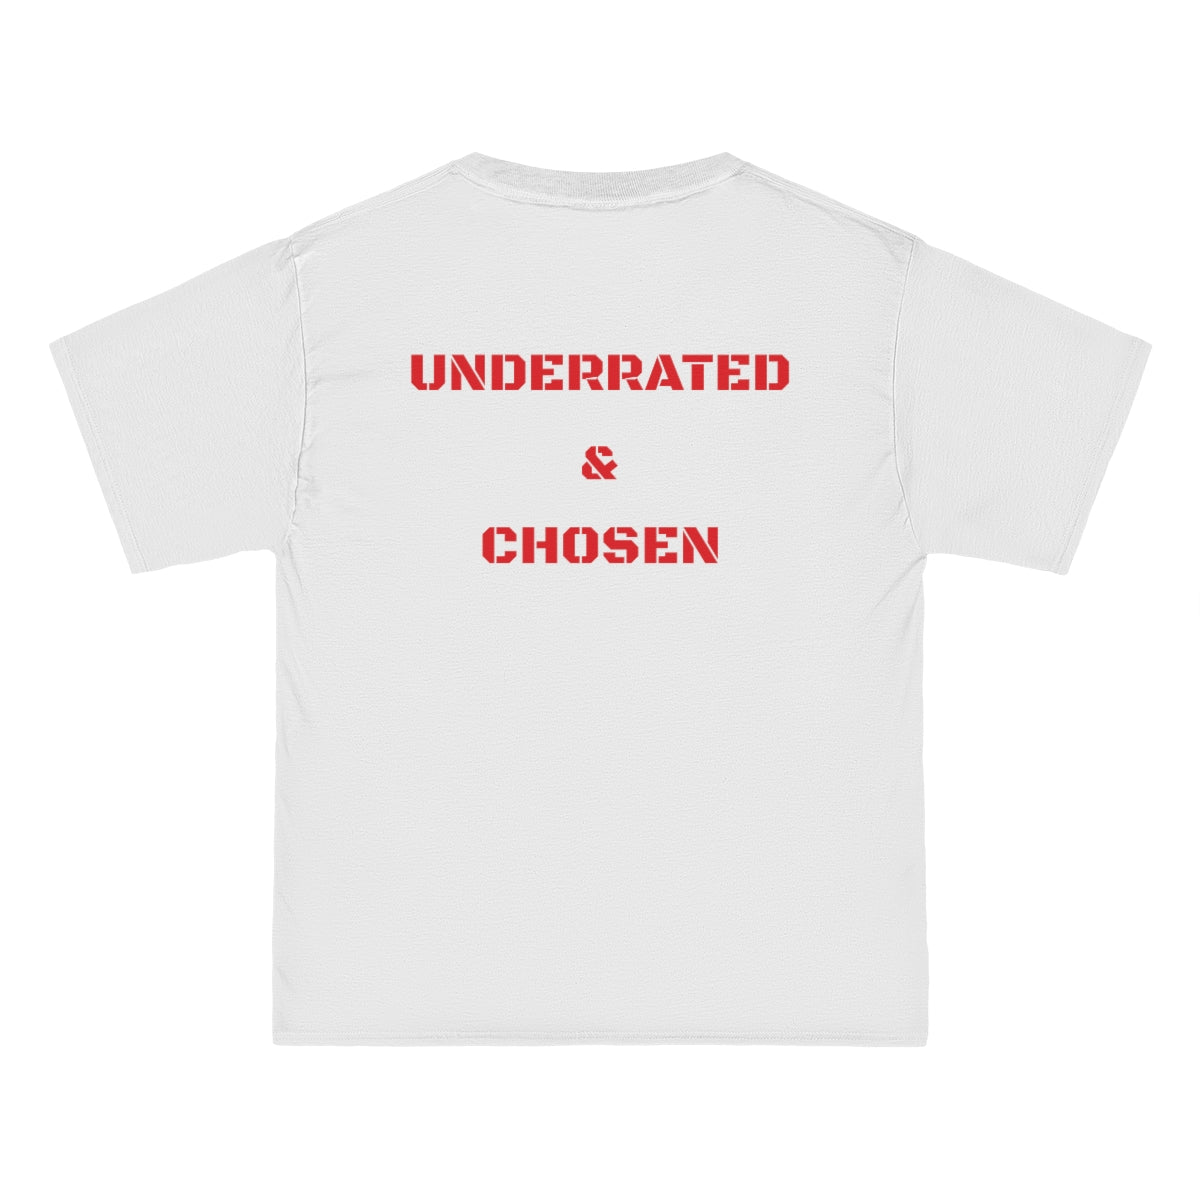 Chosen T-Shirt